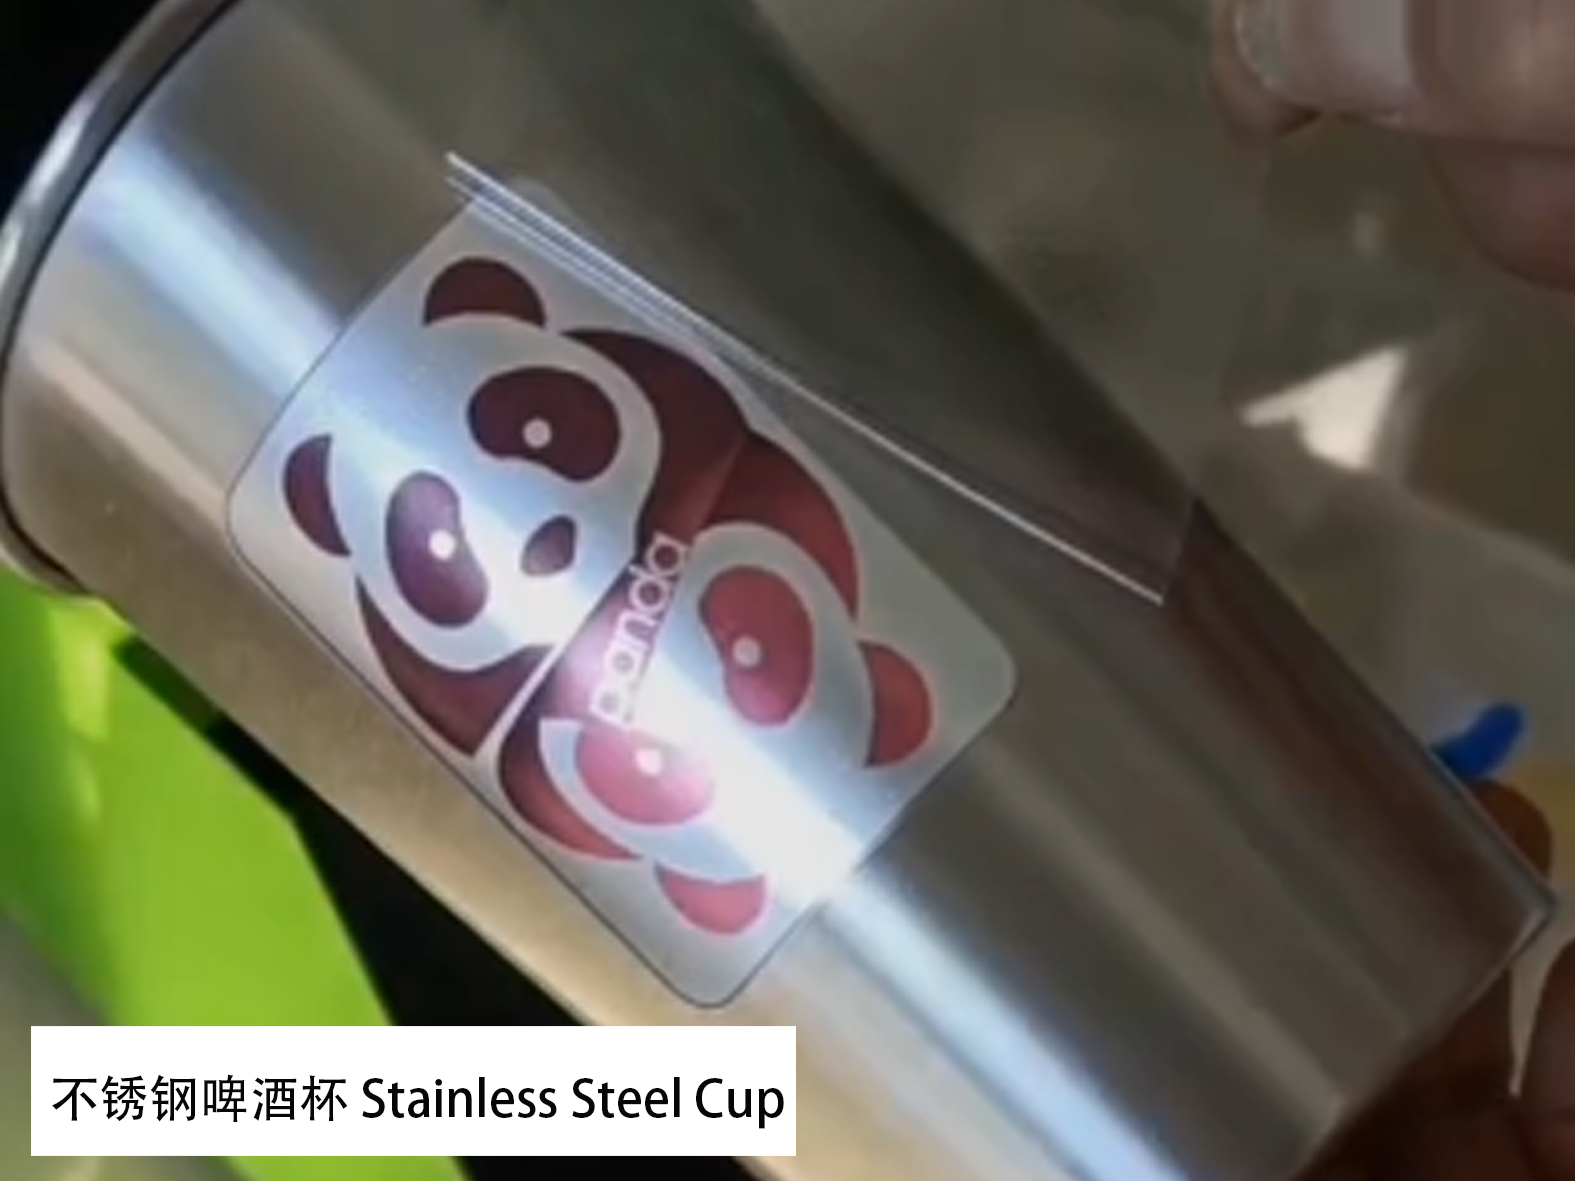 kleur logos, labels Heat oerdracht printing fan RVS bier mugs, aluminium mugs